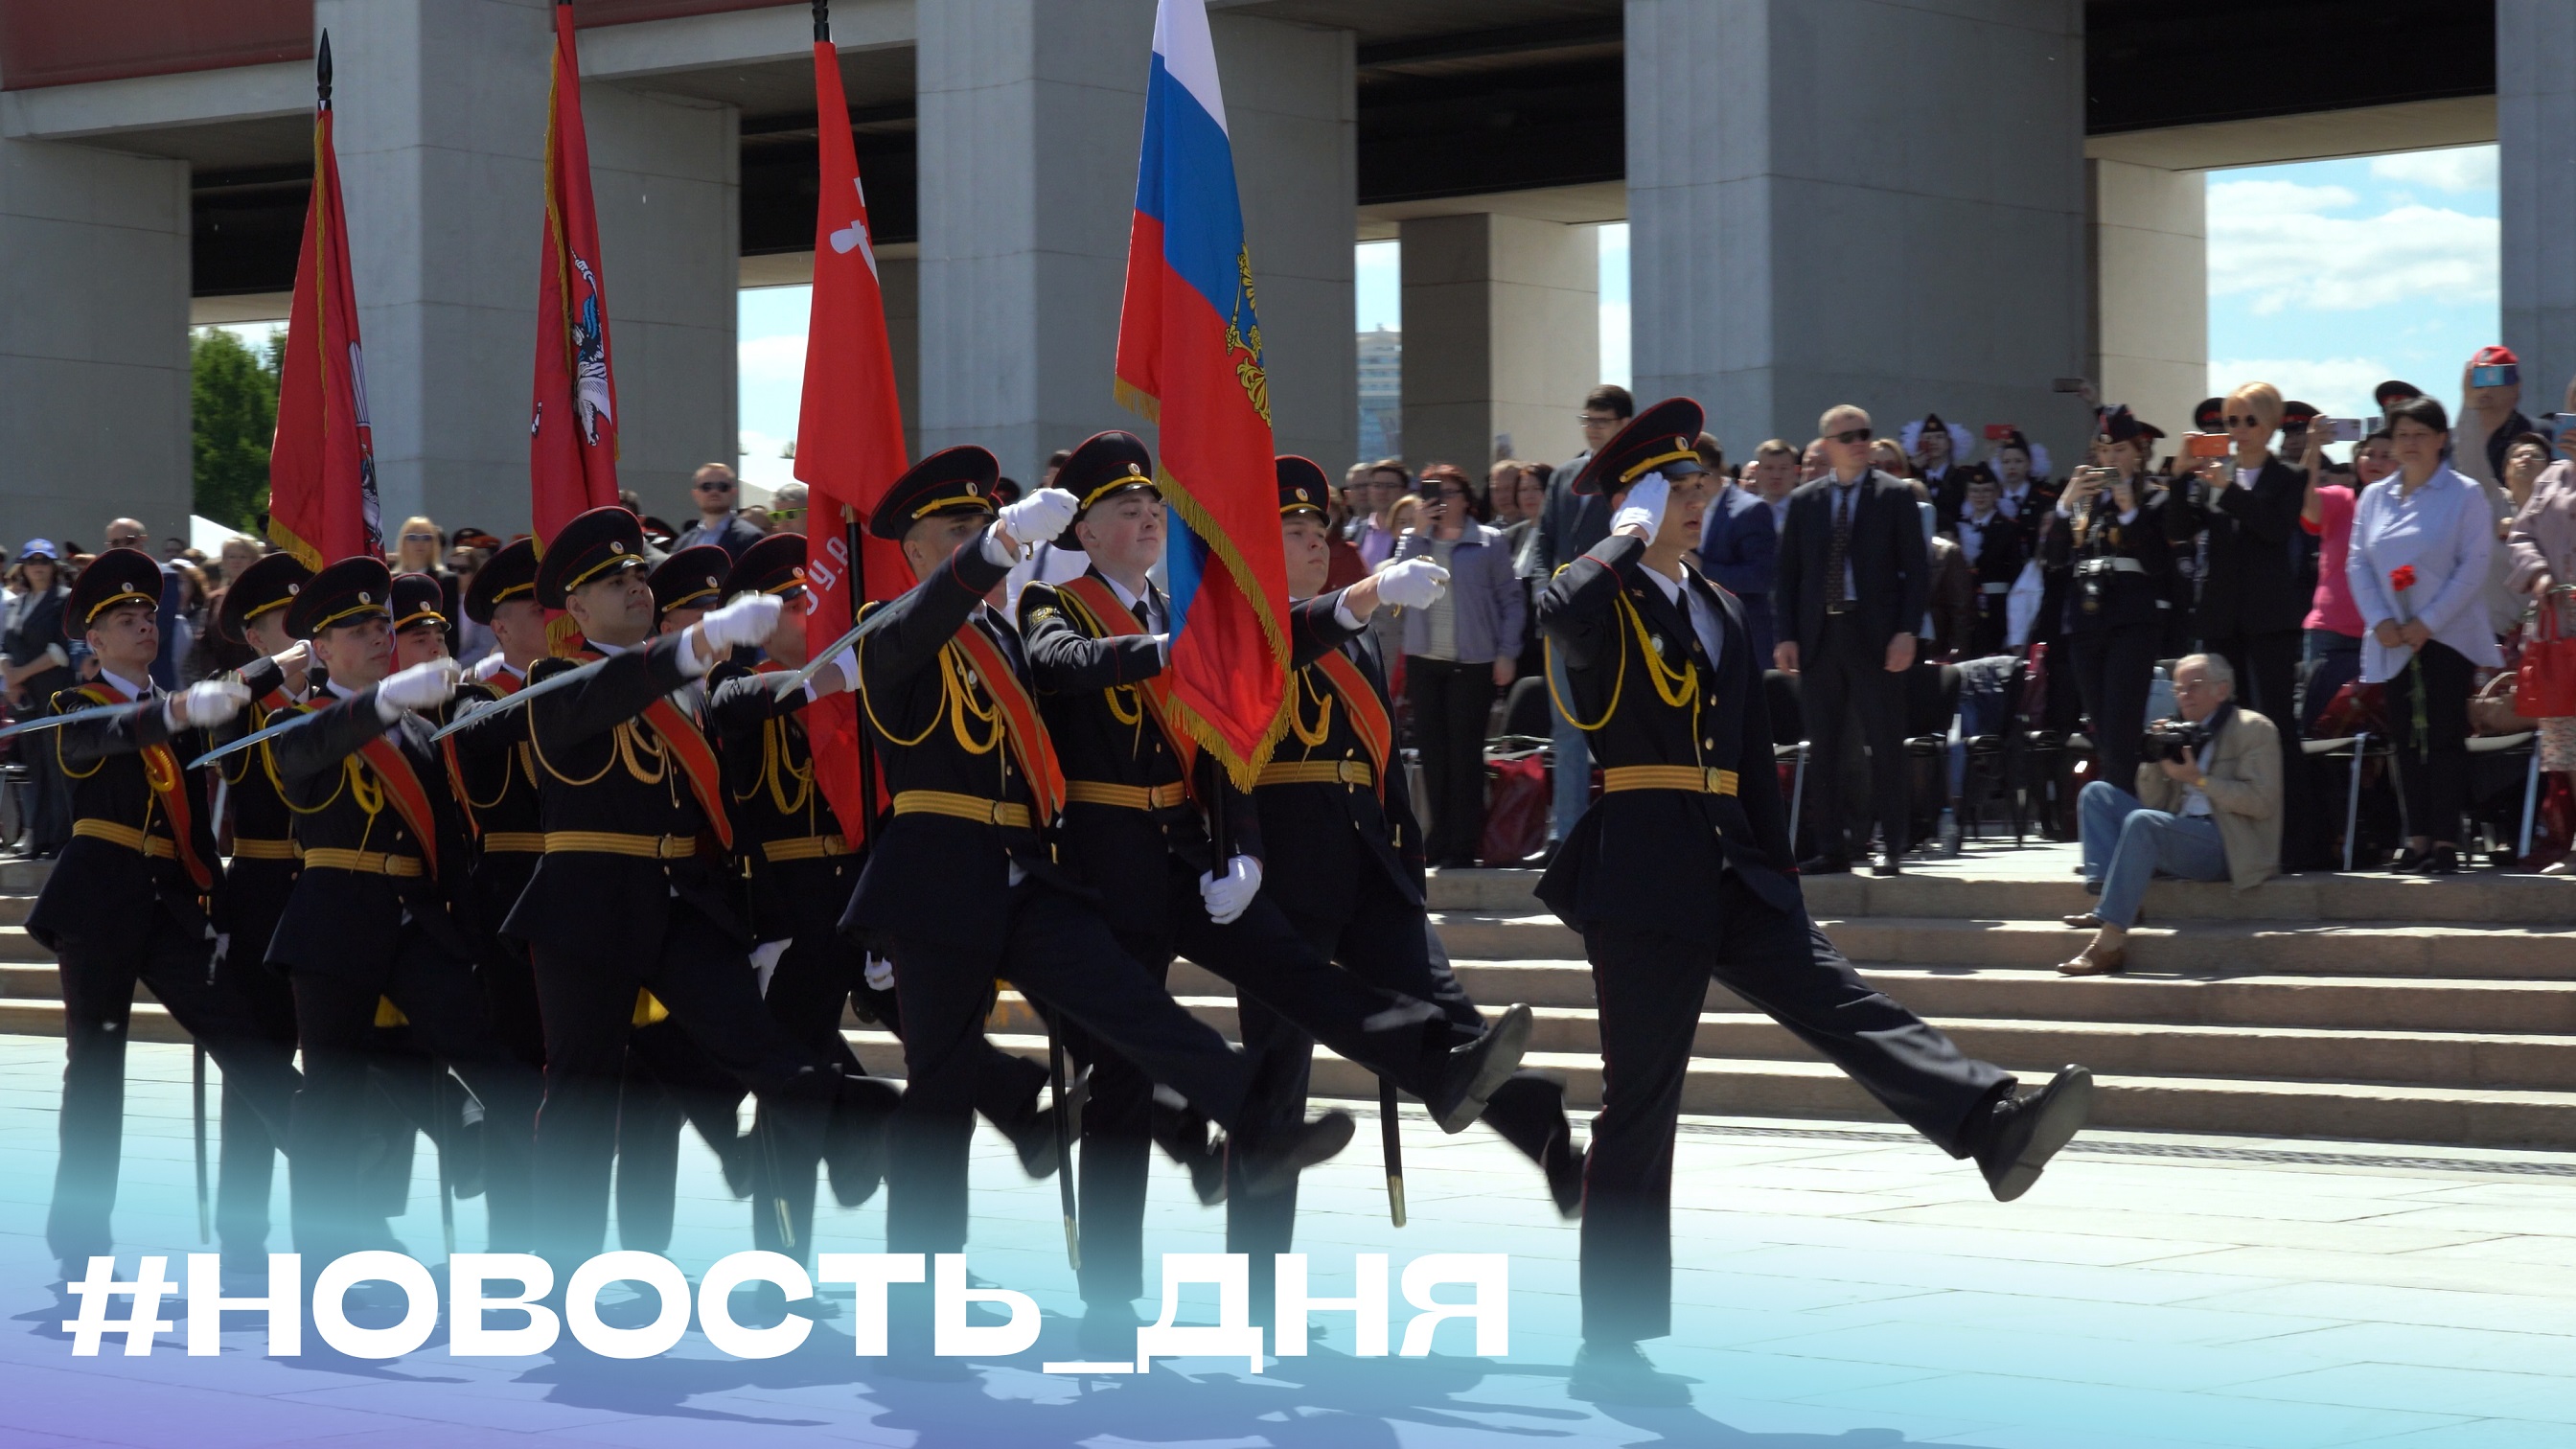 Парад кадетского движения Москвы #новость_дня